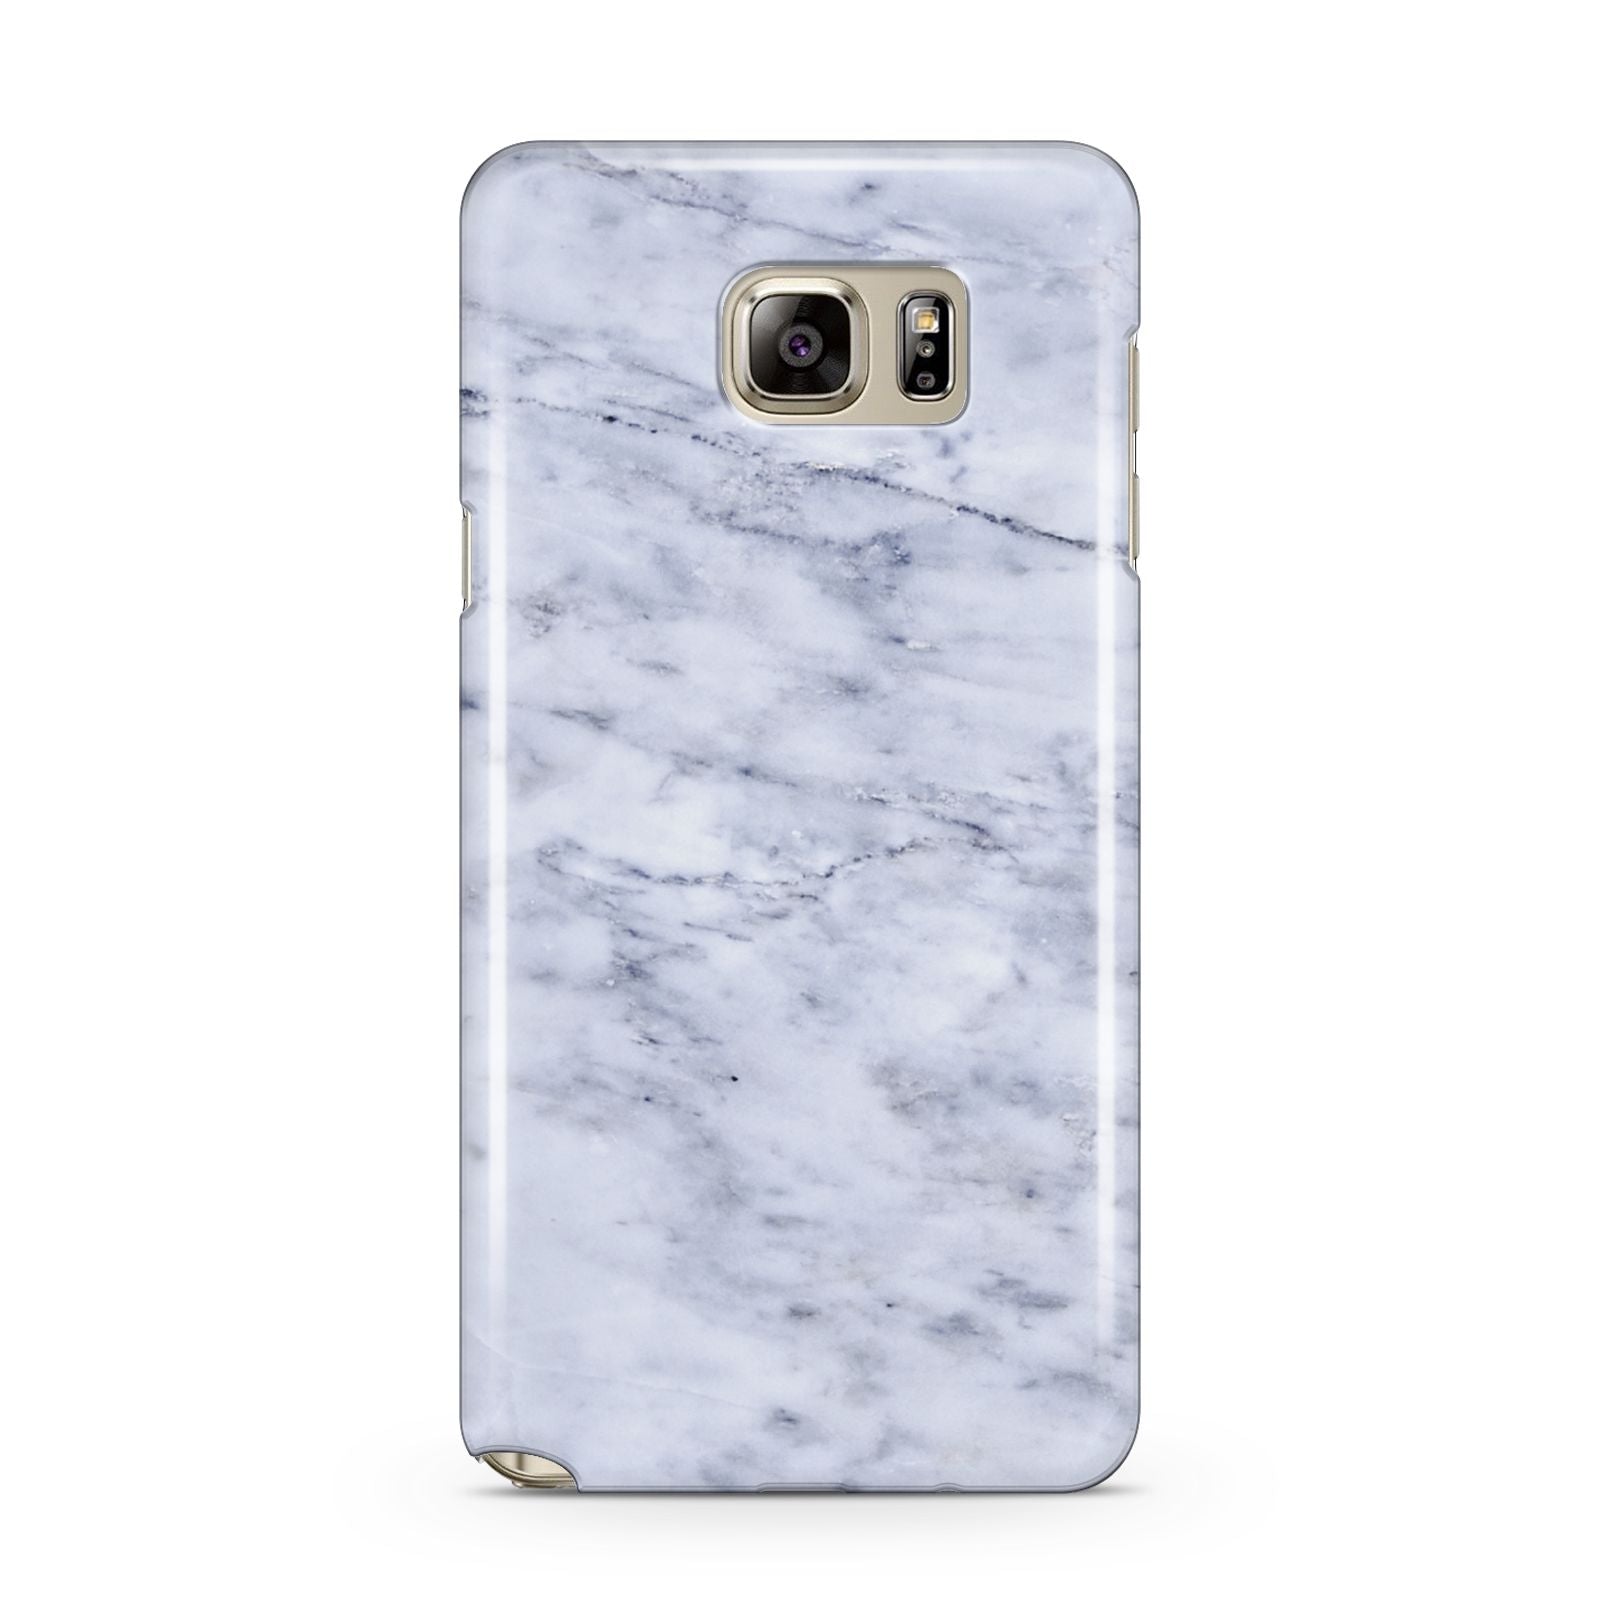 Faux Carrara Marble Print Samsung Galaxy Note 5 Case